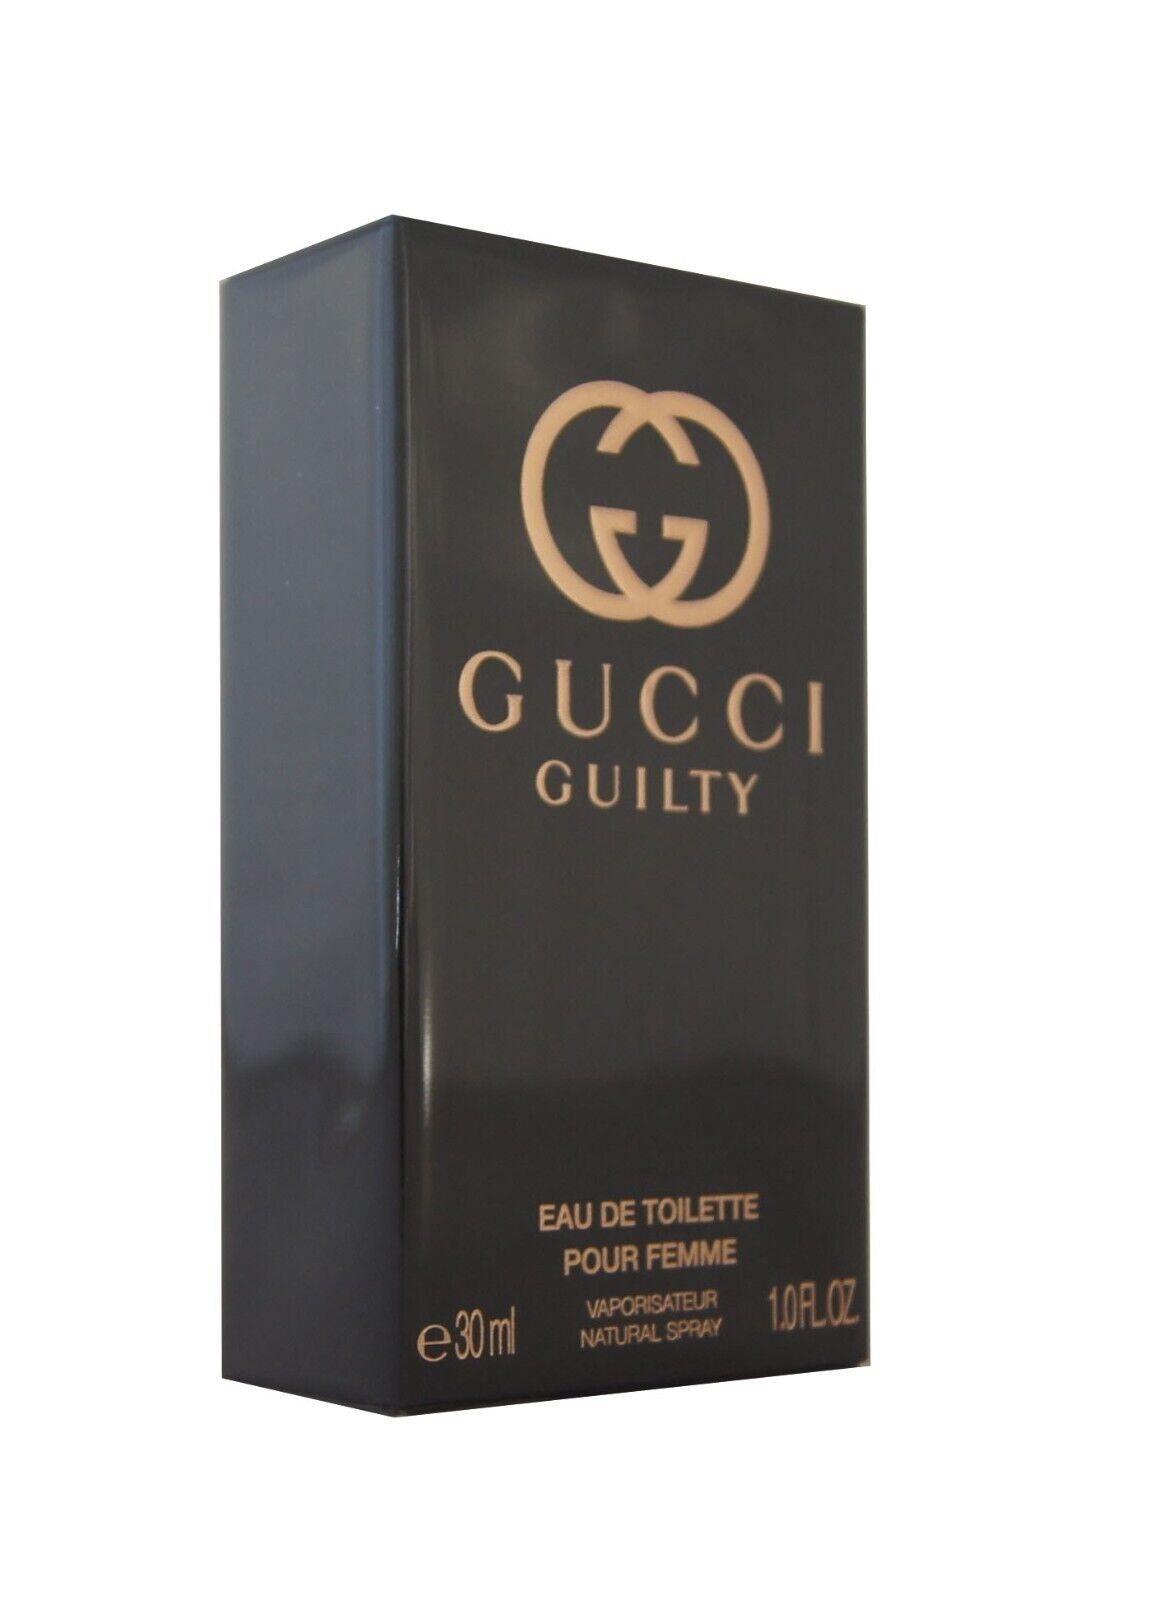 GUCCI Eau de Toilette Gucci Guilty Pour Femme Eau de Toilette edt 30ml. | Eau de Toilette